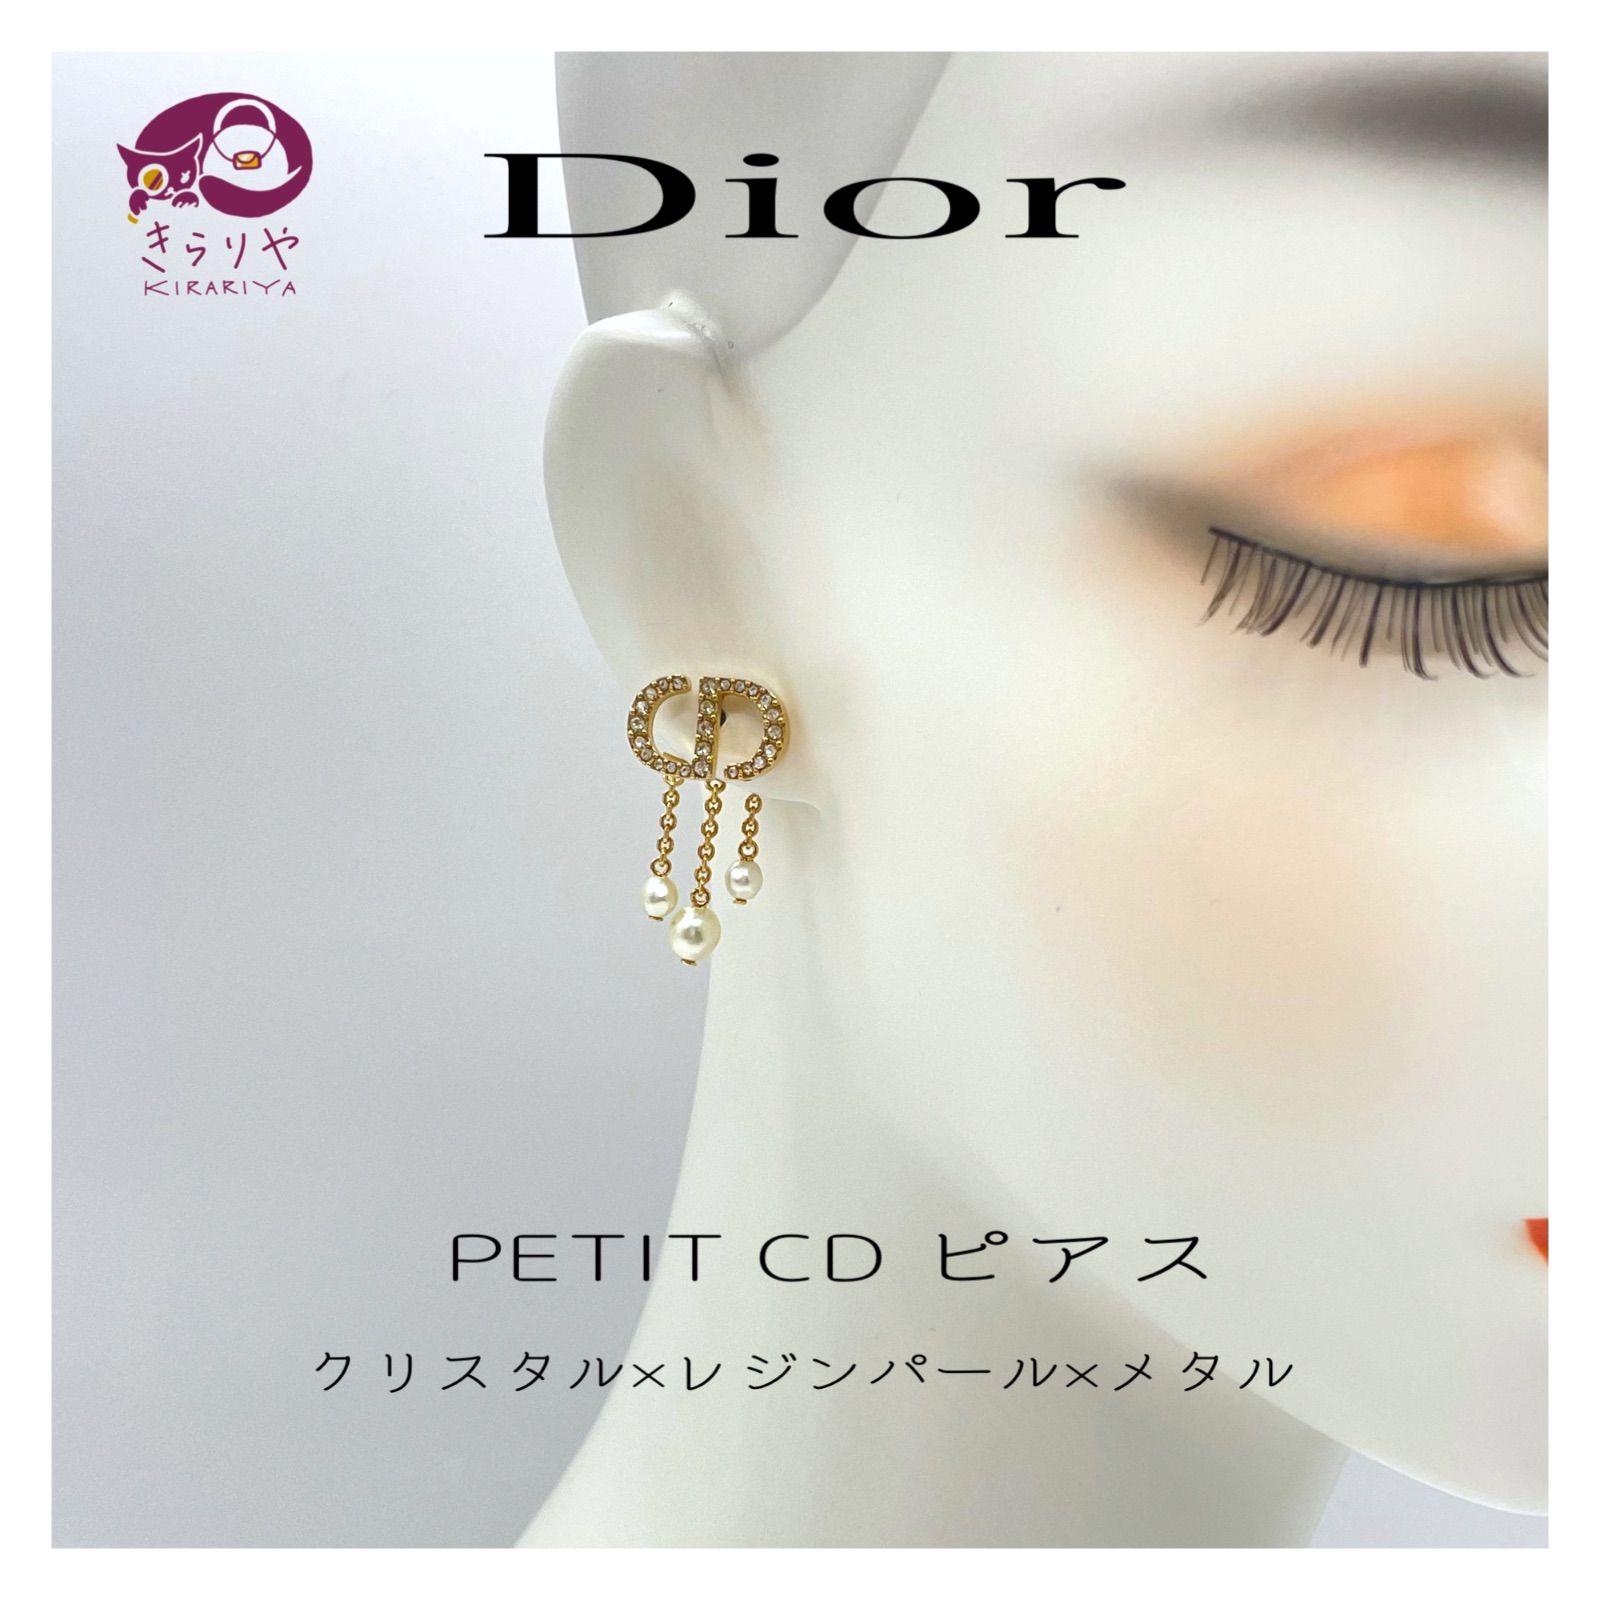 ディオール Petit CD ピアス 片耳 - ピアス(片耳用)